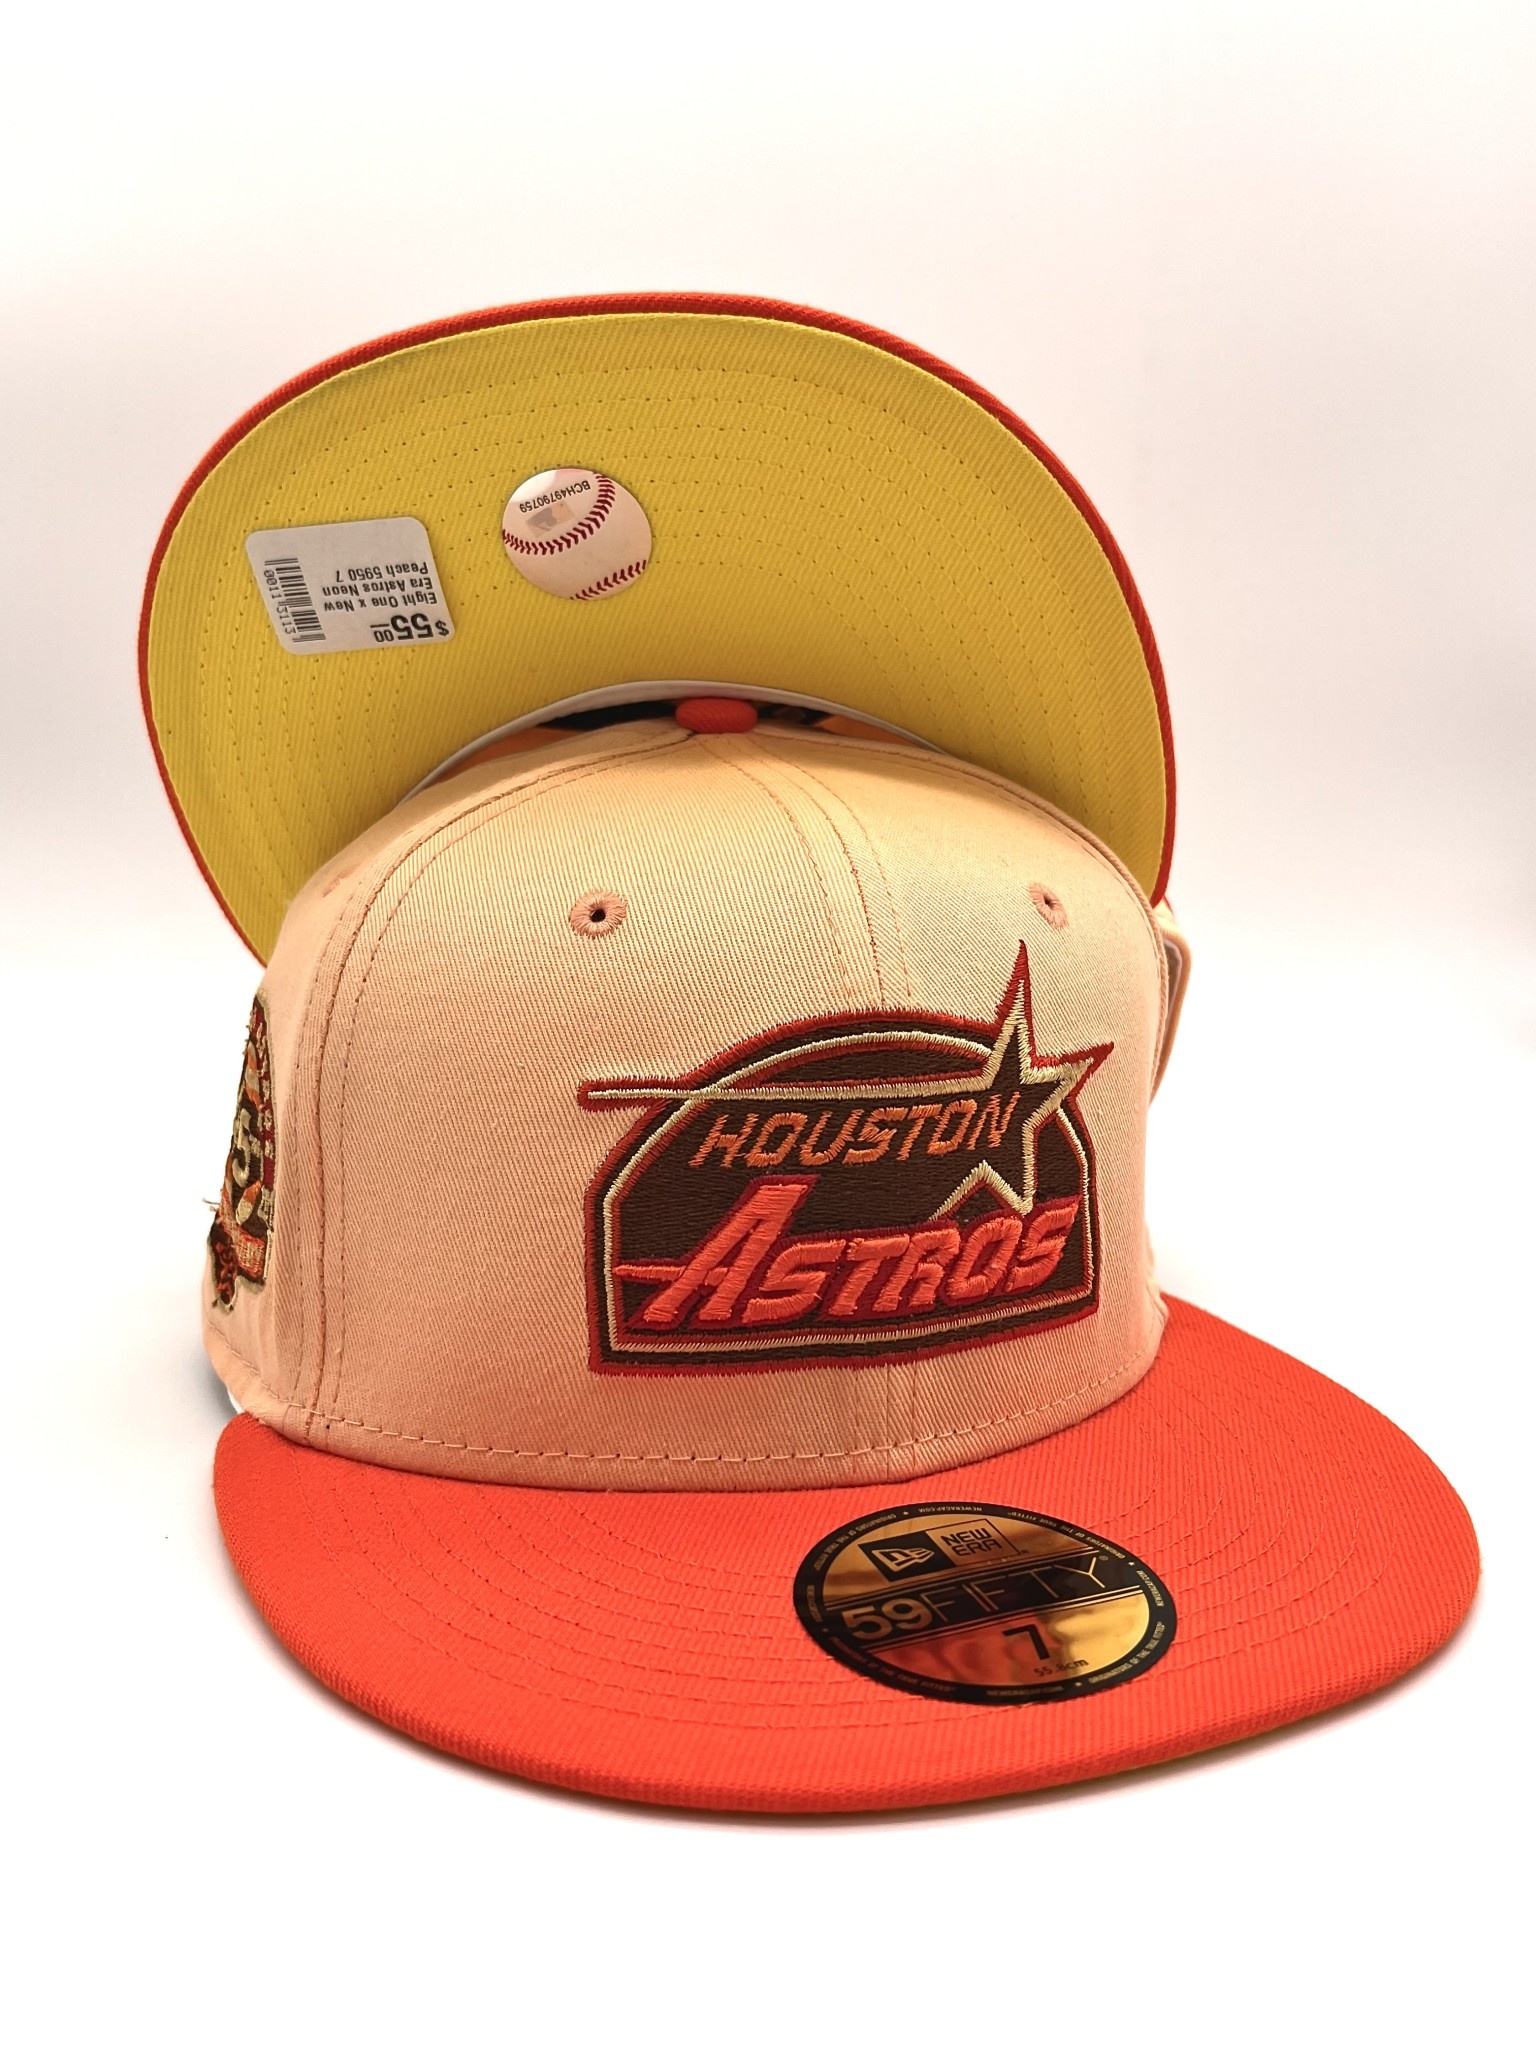 orange astros hat